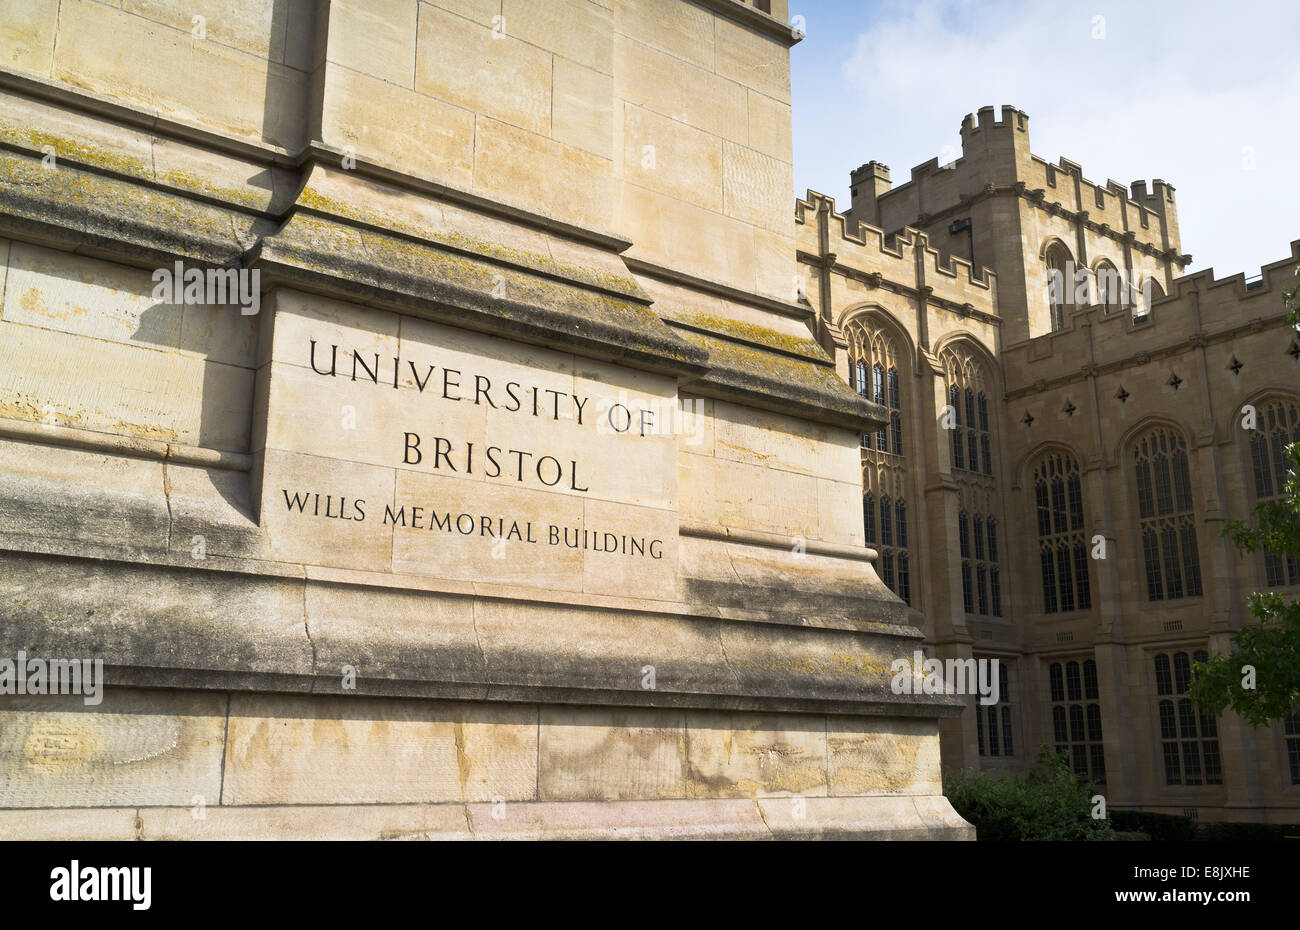 Dh l'Université de Bristol Clifton Bristol University of Bristol signer Wills Memorial Building uk historique Banque D'Images